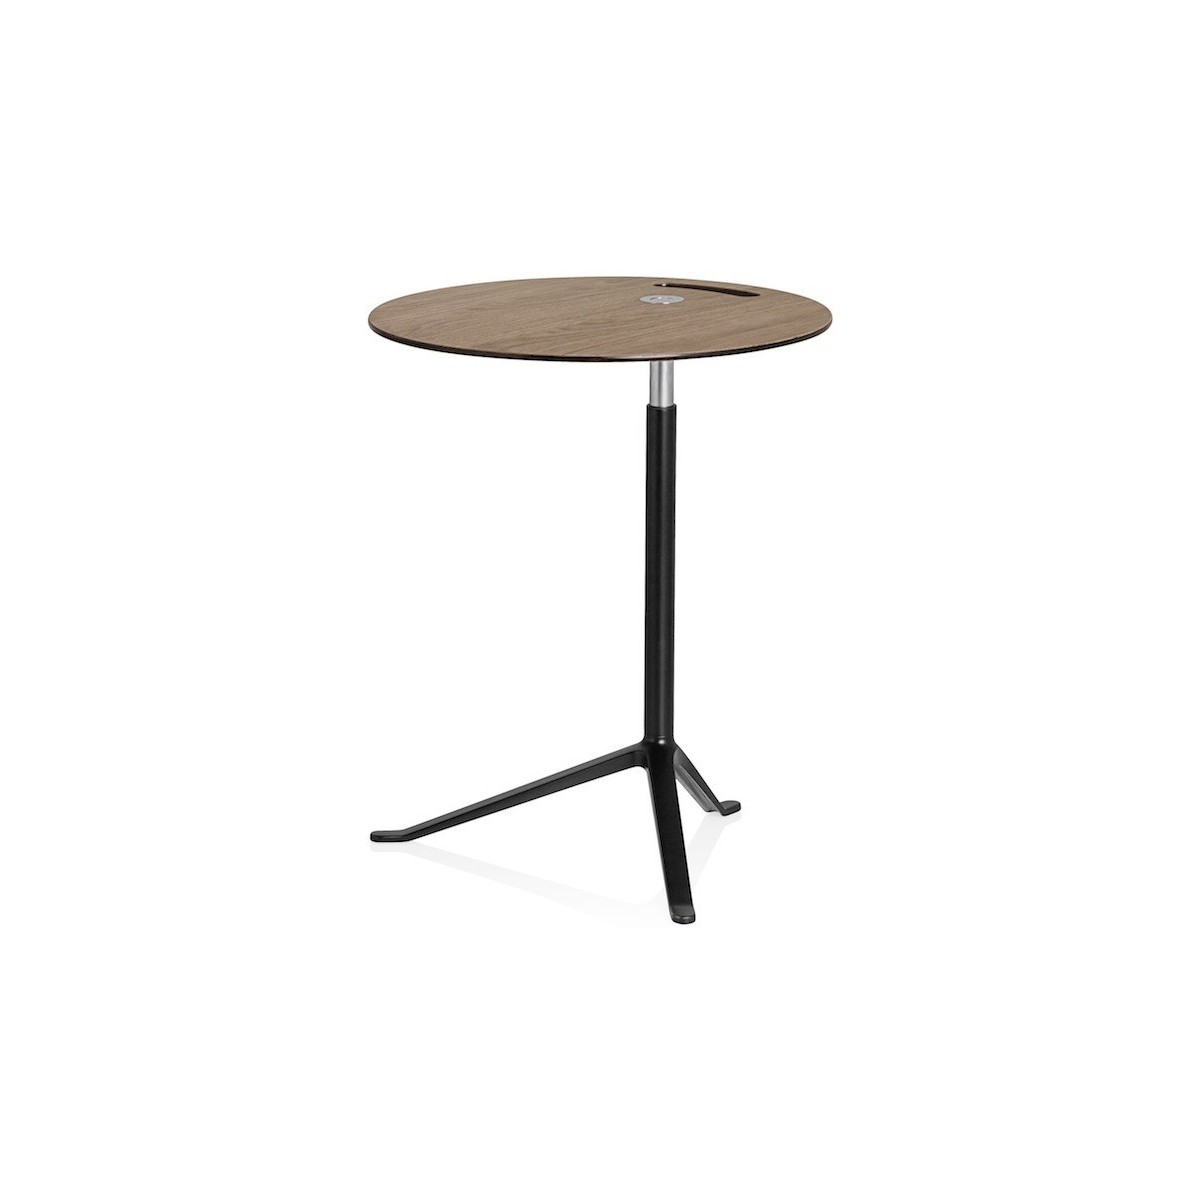 KS11 Little Friend table (Adjustable height) – Walnut / Black